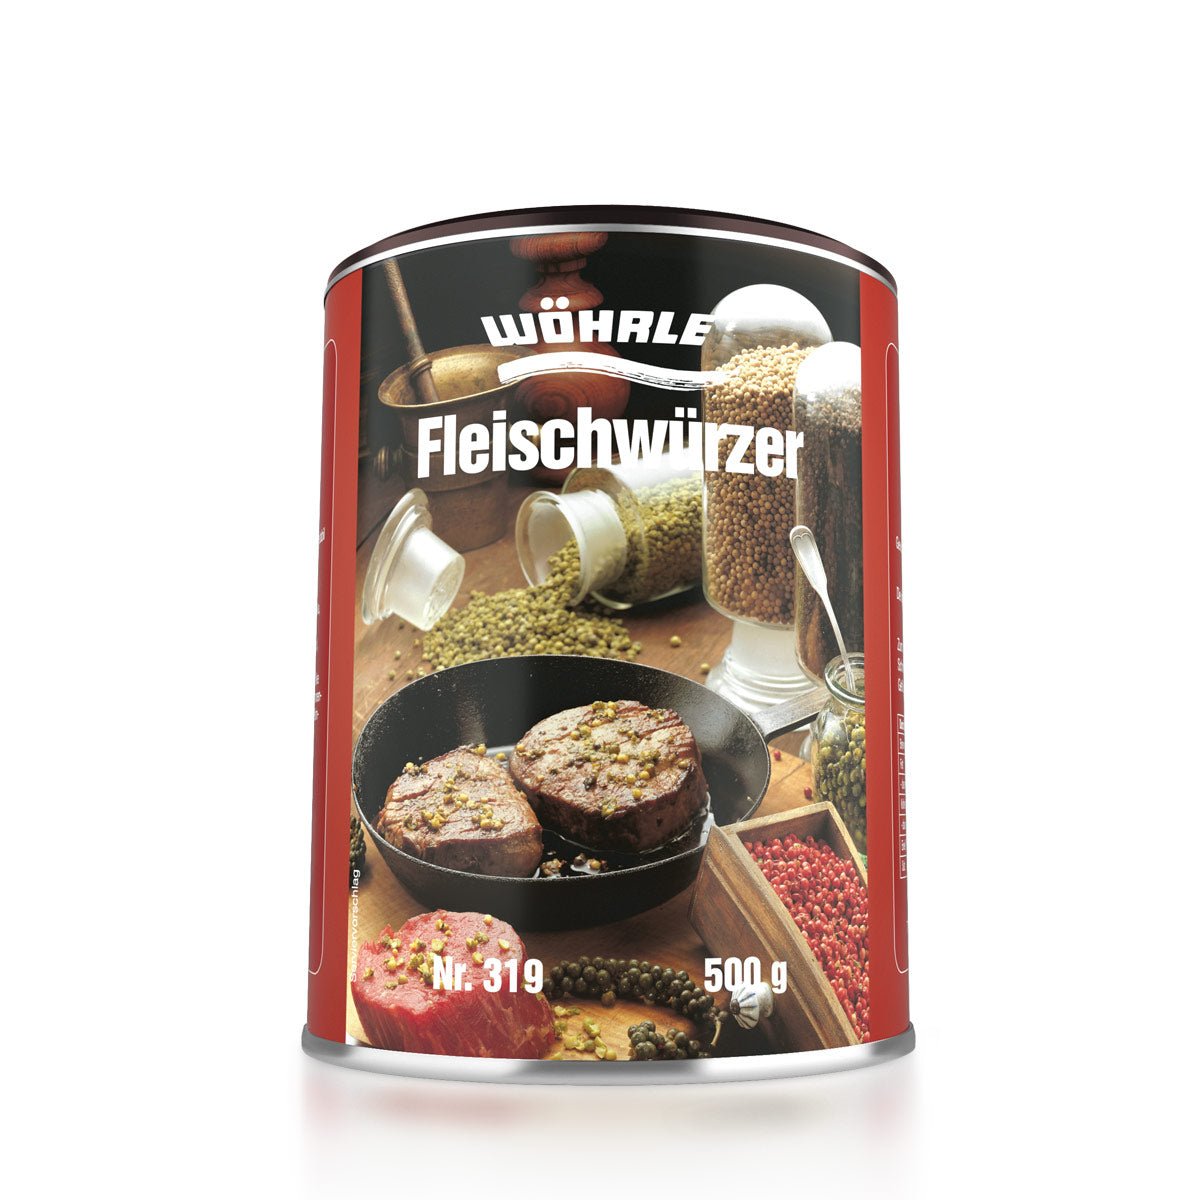 Fleischwürzer - Wöhrle - S' Beschde für dahoim!